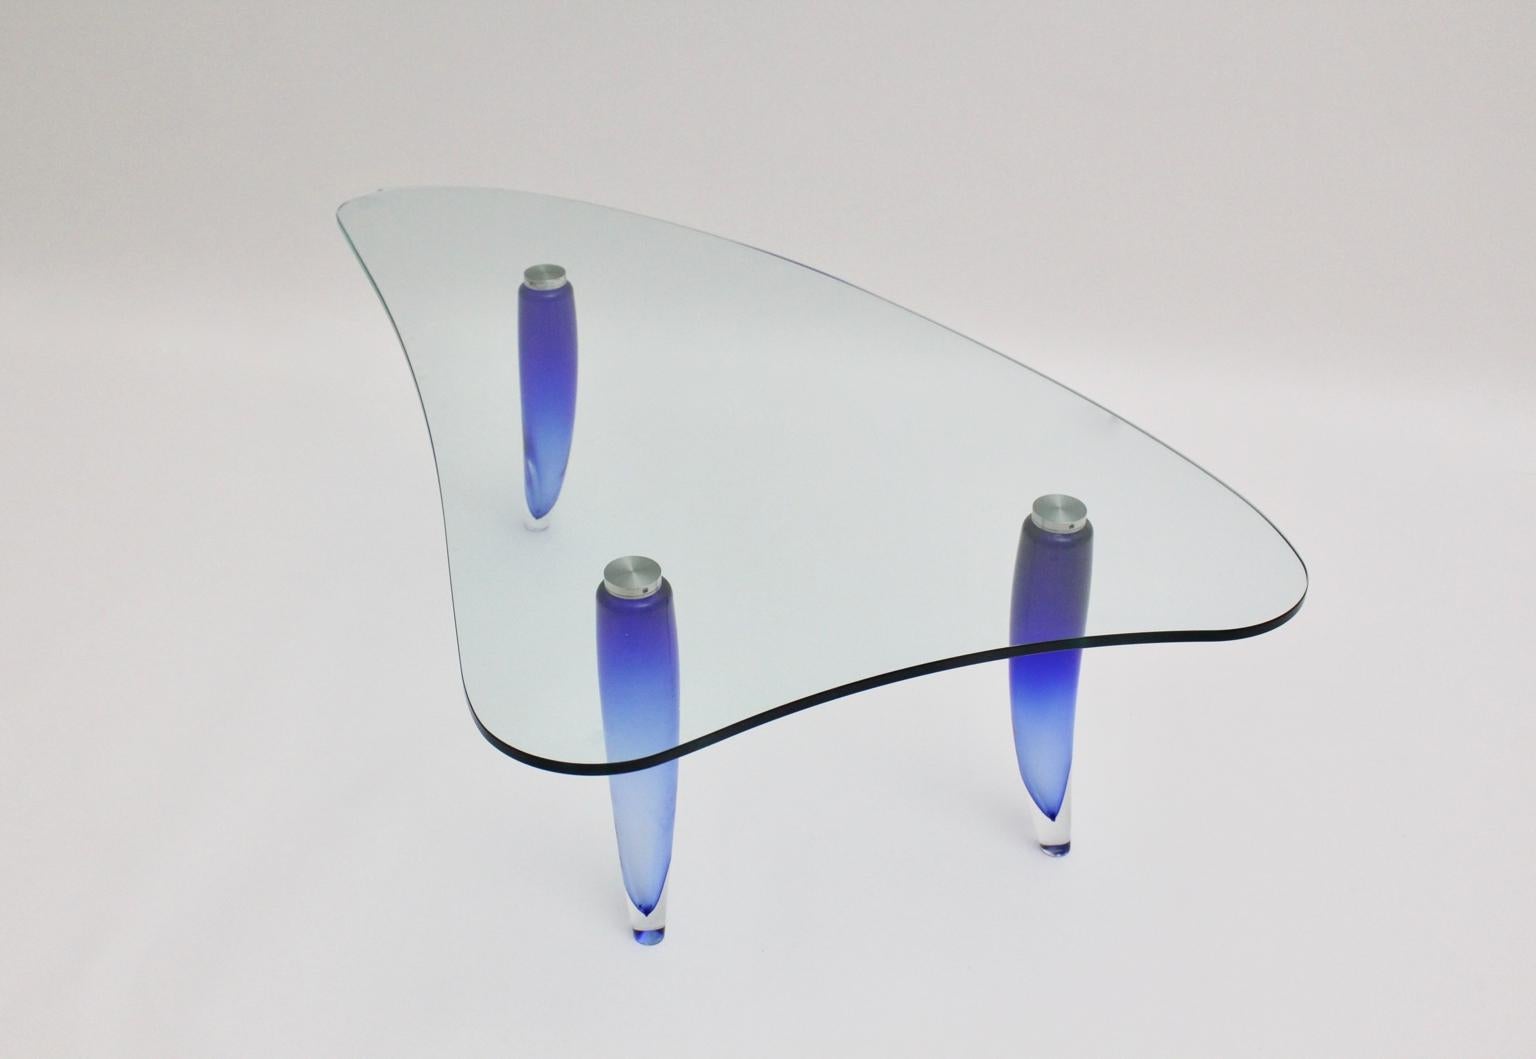 Table basse moderne en verre vintage bleu et transparent, qui présente trois pieds en verre incurvés bleus attribués par Seguso. Les pieds de la table en verre bleu aqua sont reliés par trois vis au plateau en verre clair légèrement incurvé...
La